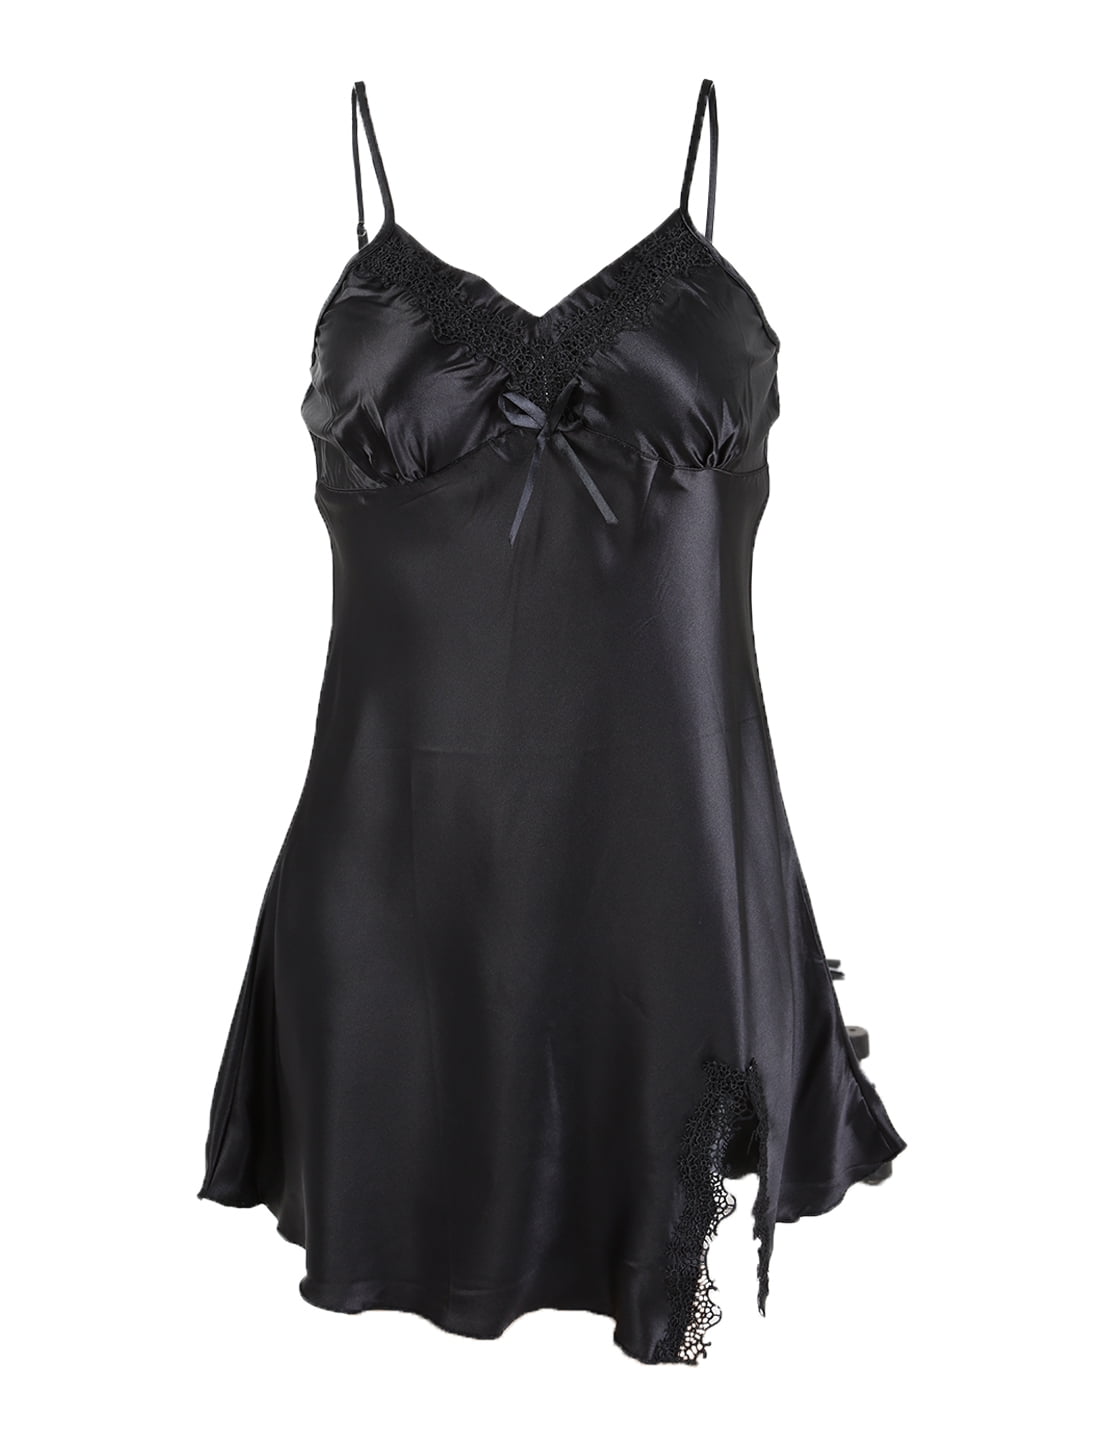 Women Sexy Satin Lace Trim Sleepwear Nightgown Pajama Slip Dress Black ...